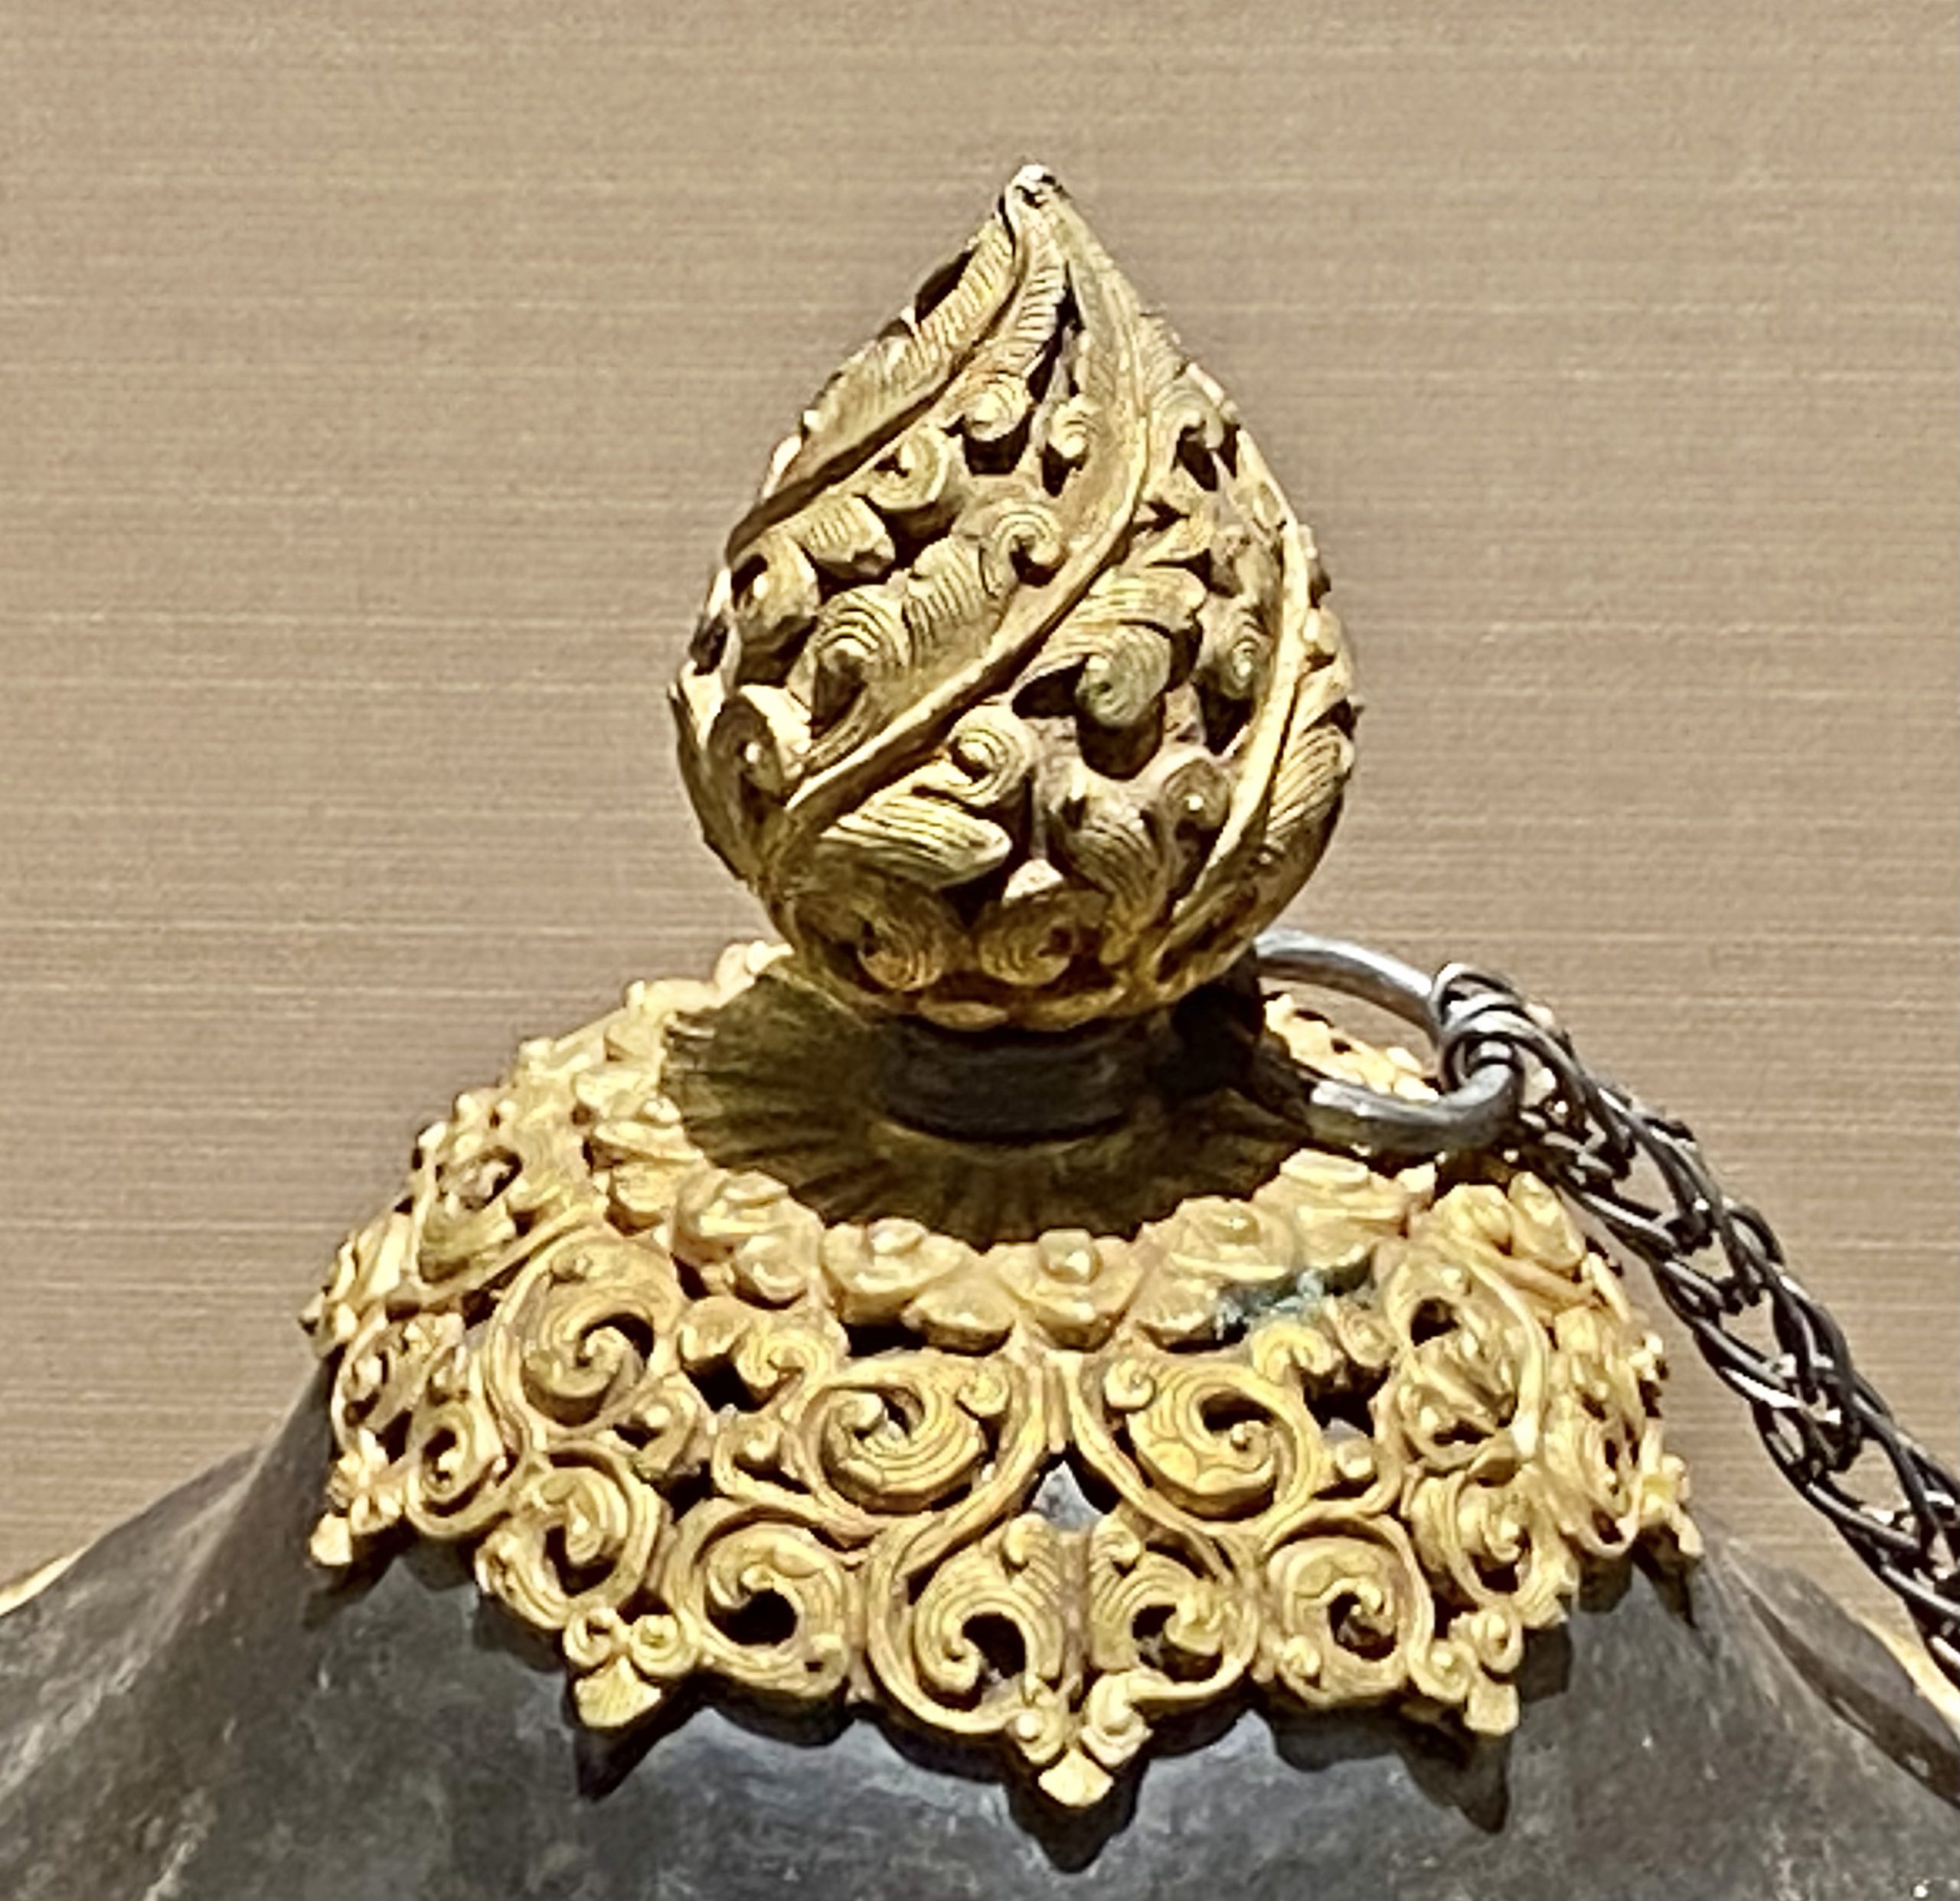  銀酥油壺-現代-巡回特別展【天歌長歌-唐蕃古道】-四川博物館